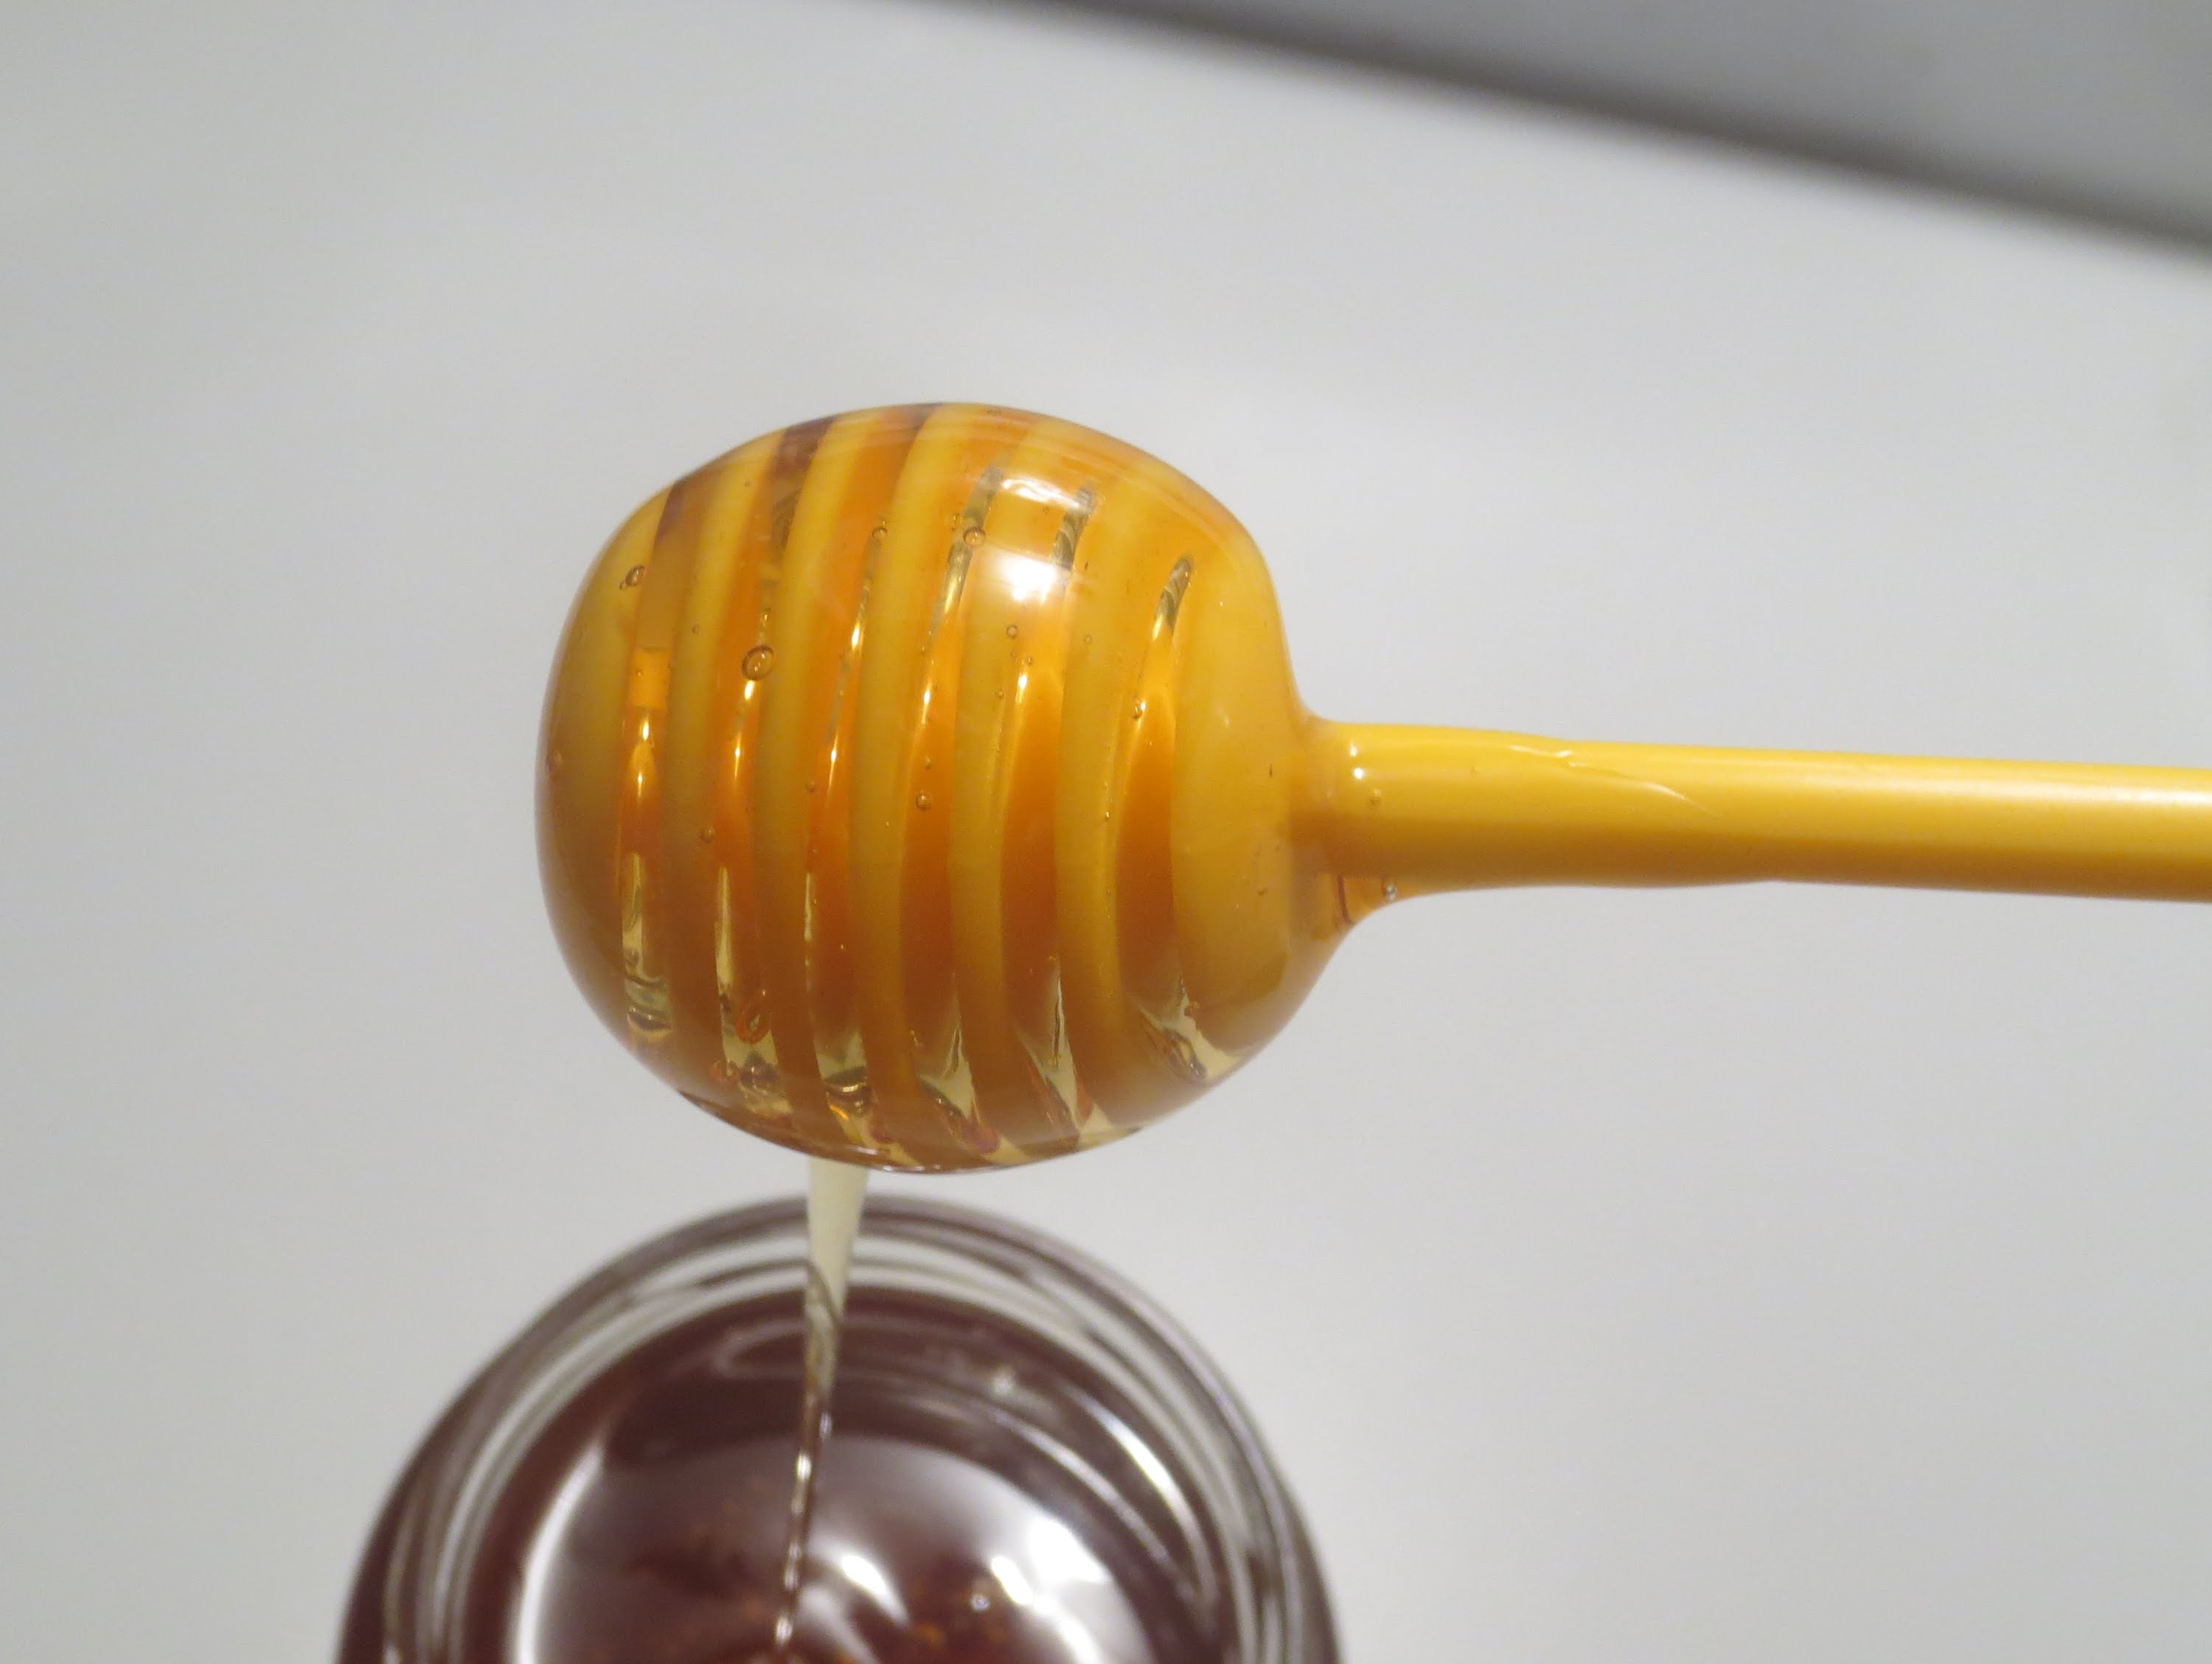 كيف تعرف العسل الحر من المغشوش بطرق بسيطة وسهلة